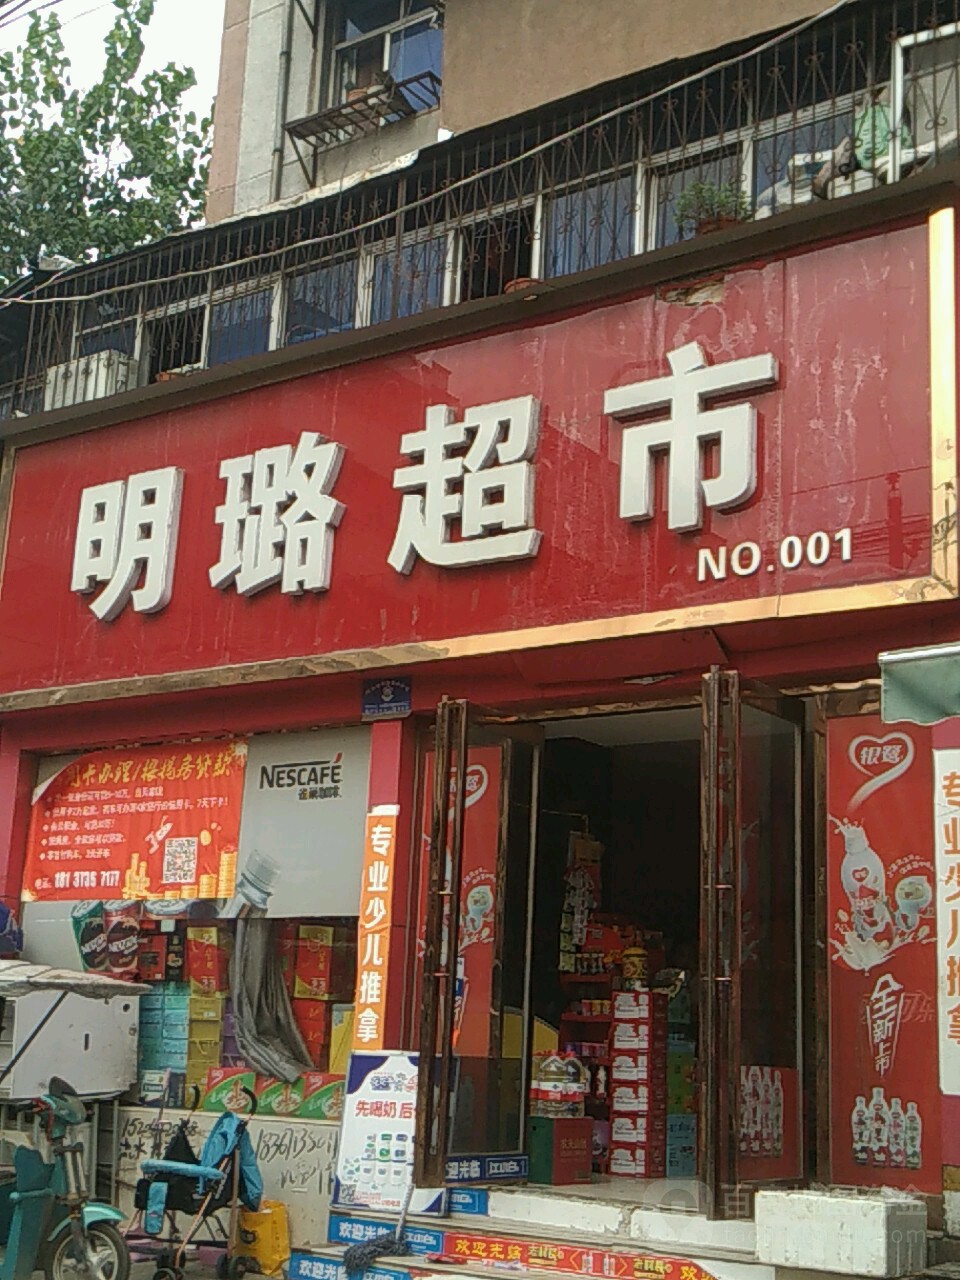 明璐超市(NO.001)